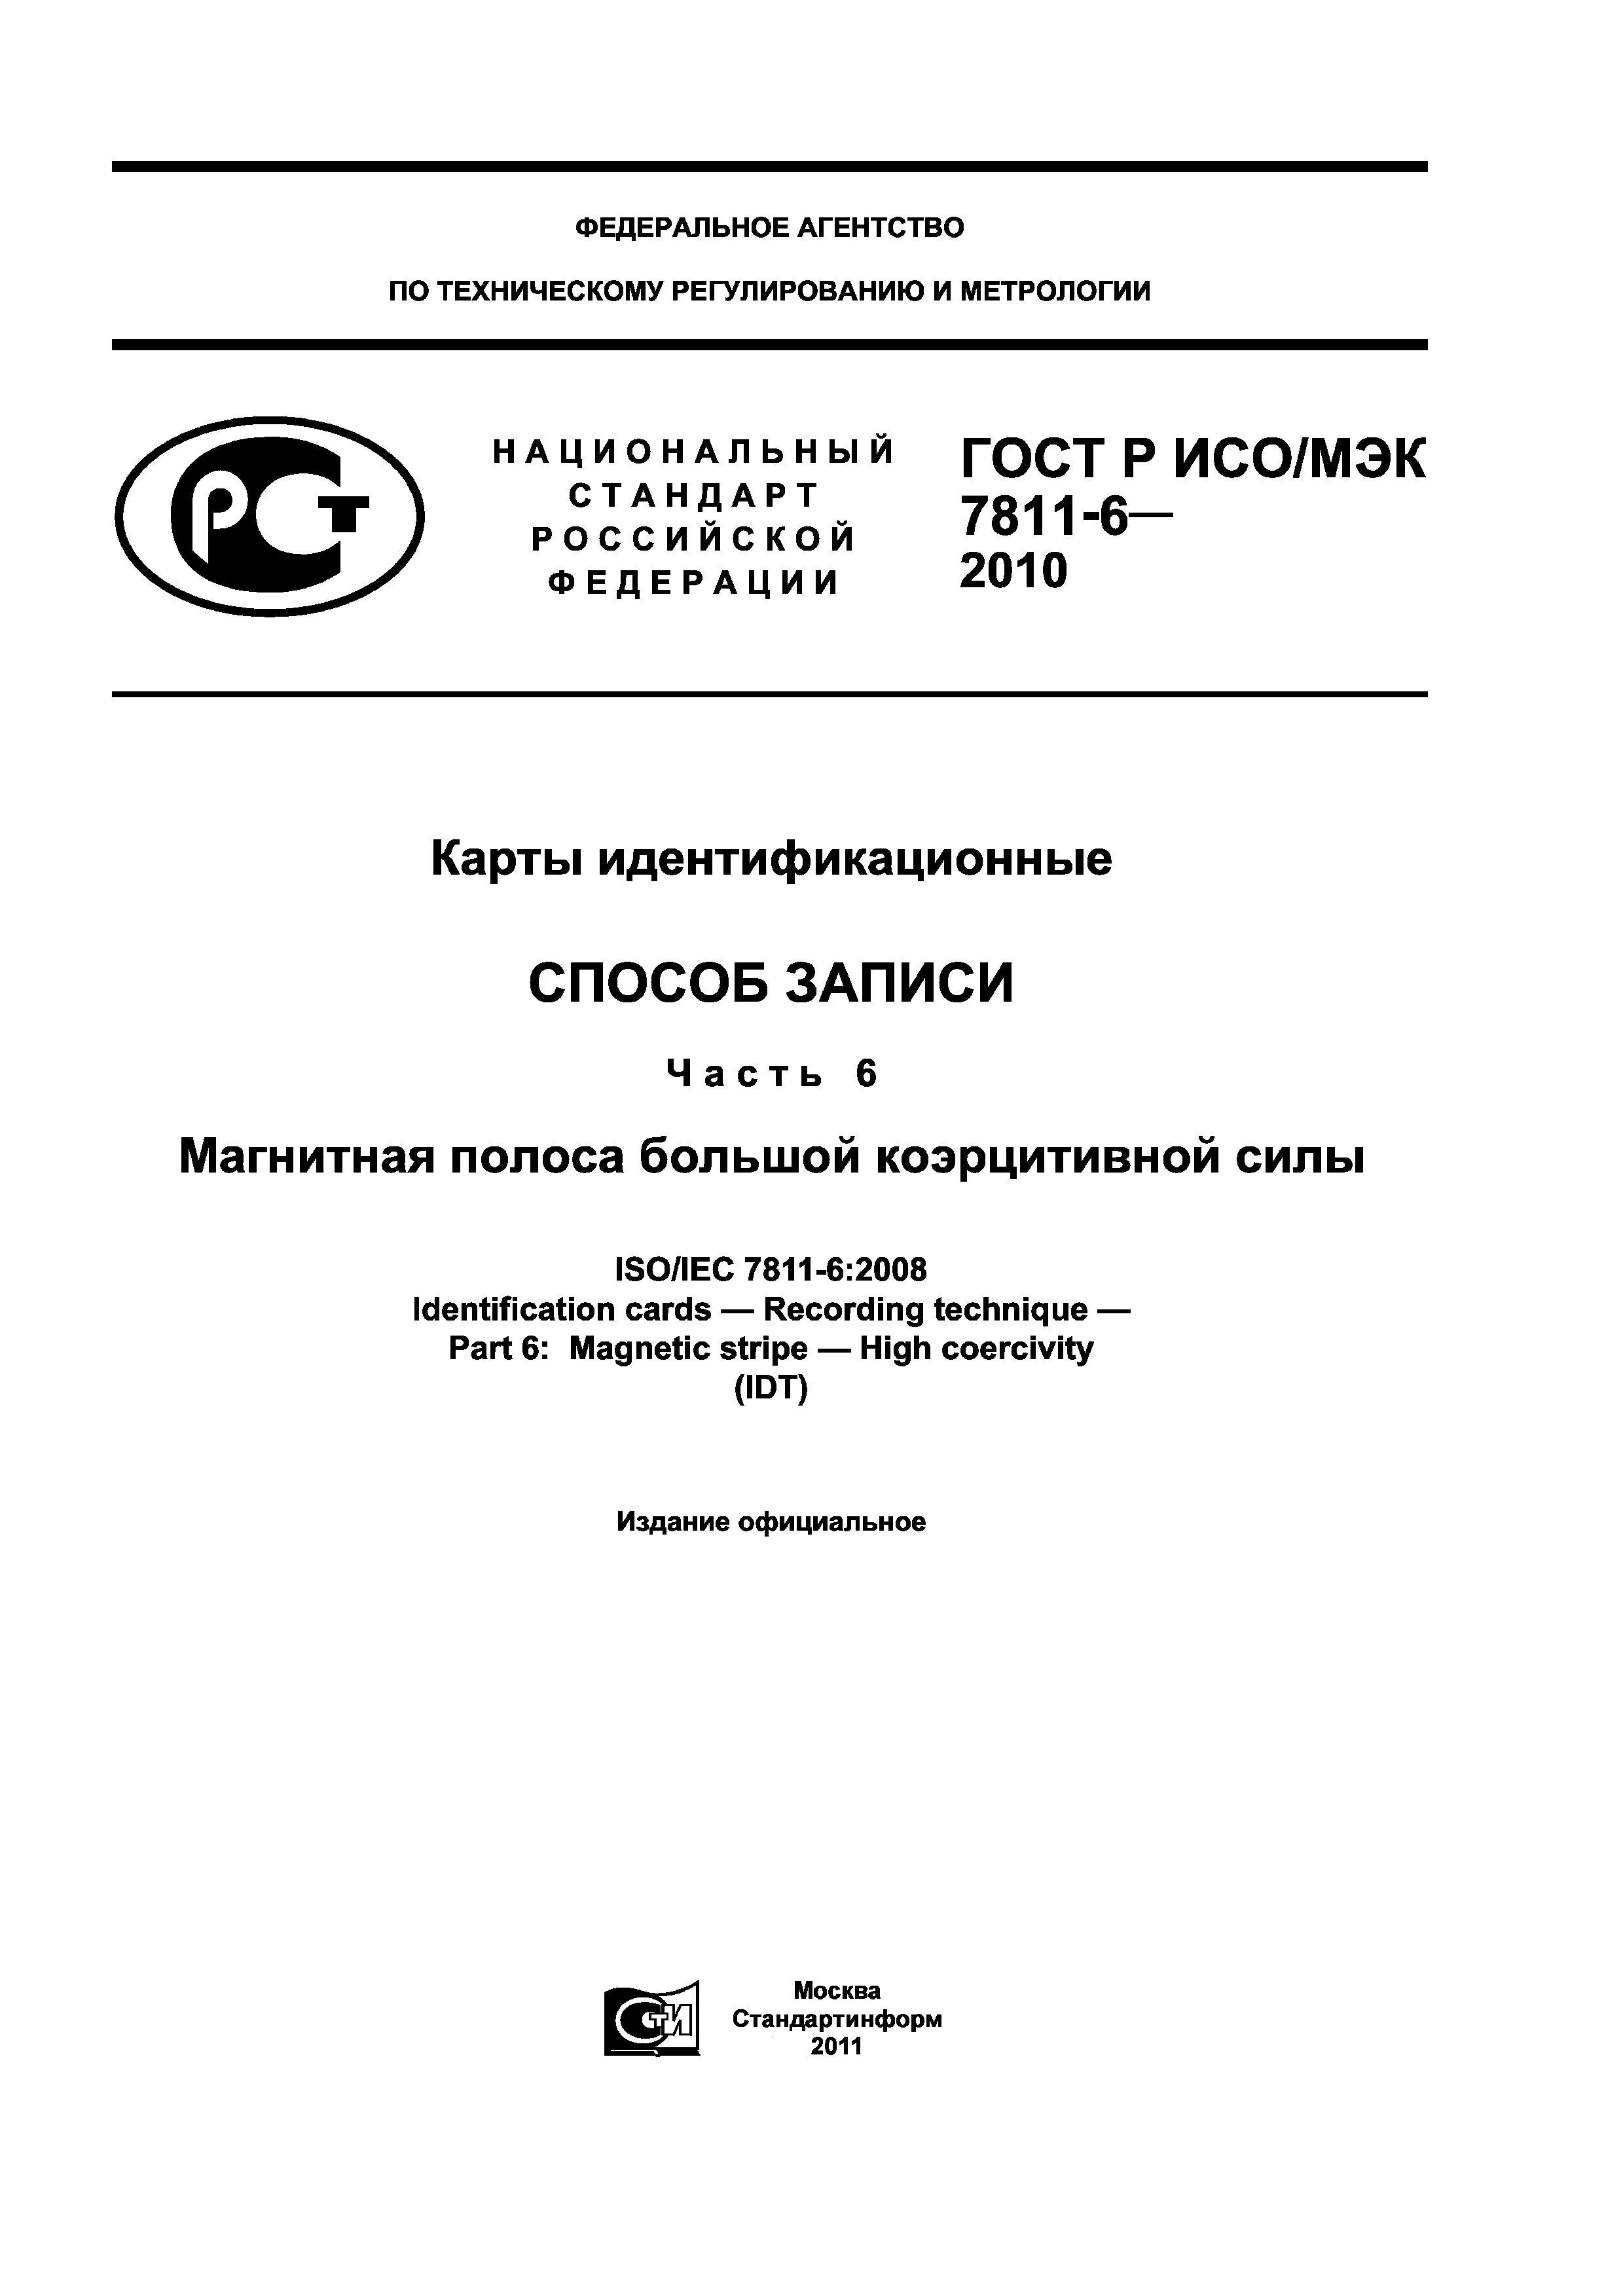 ГОСТ Р ИСО/МЭК 7811-6-2010